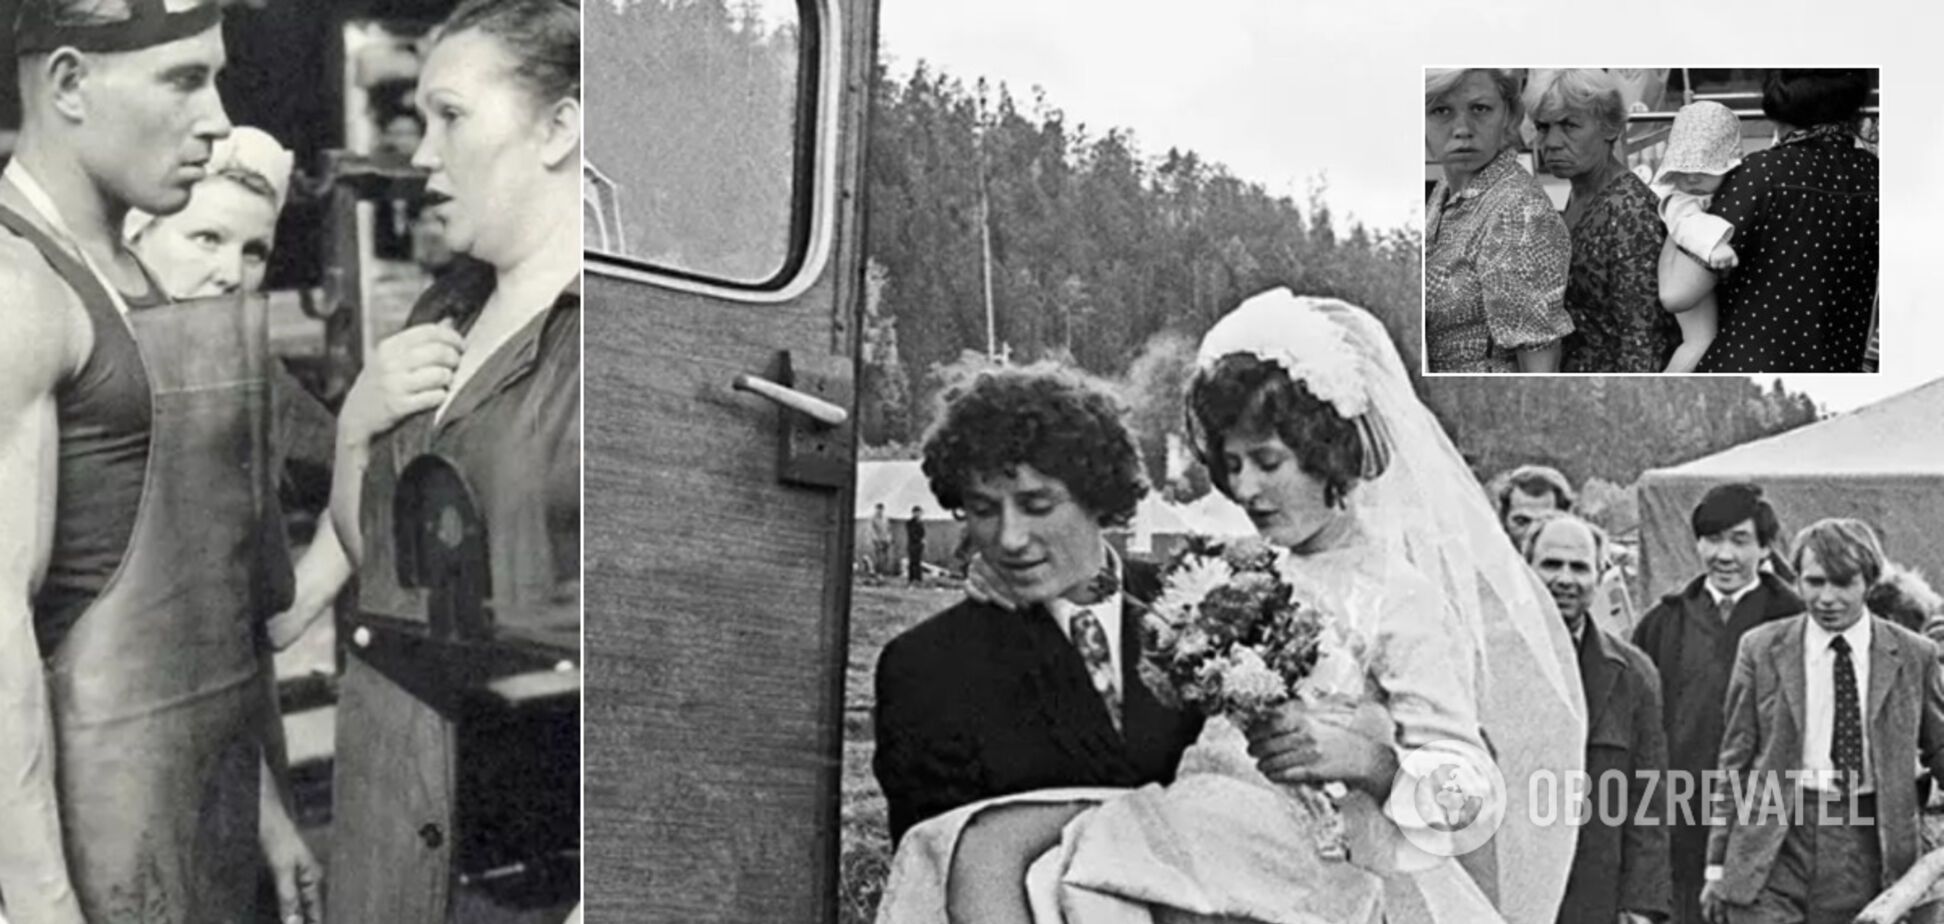 Шлюб без кохання і 'розбірки' в парткомі: як жили сім'ї в СРСР